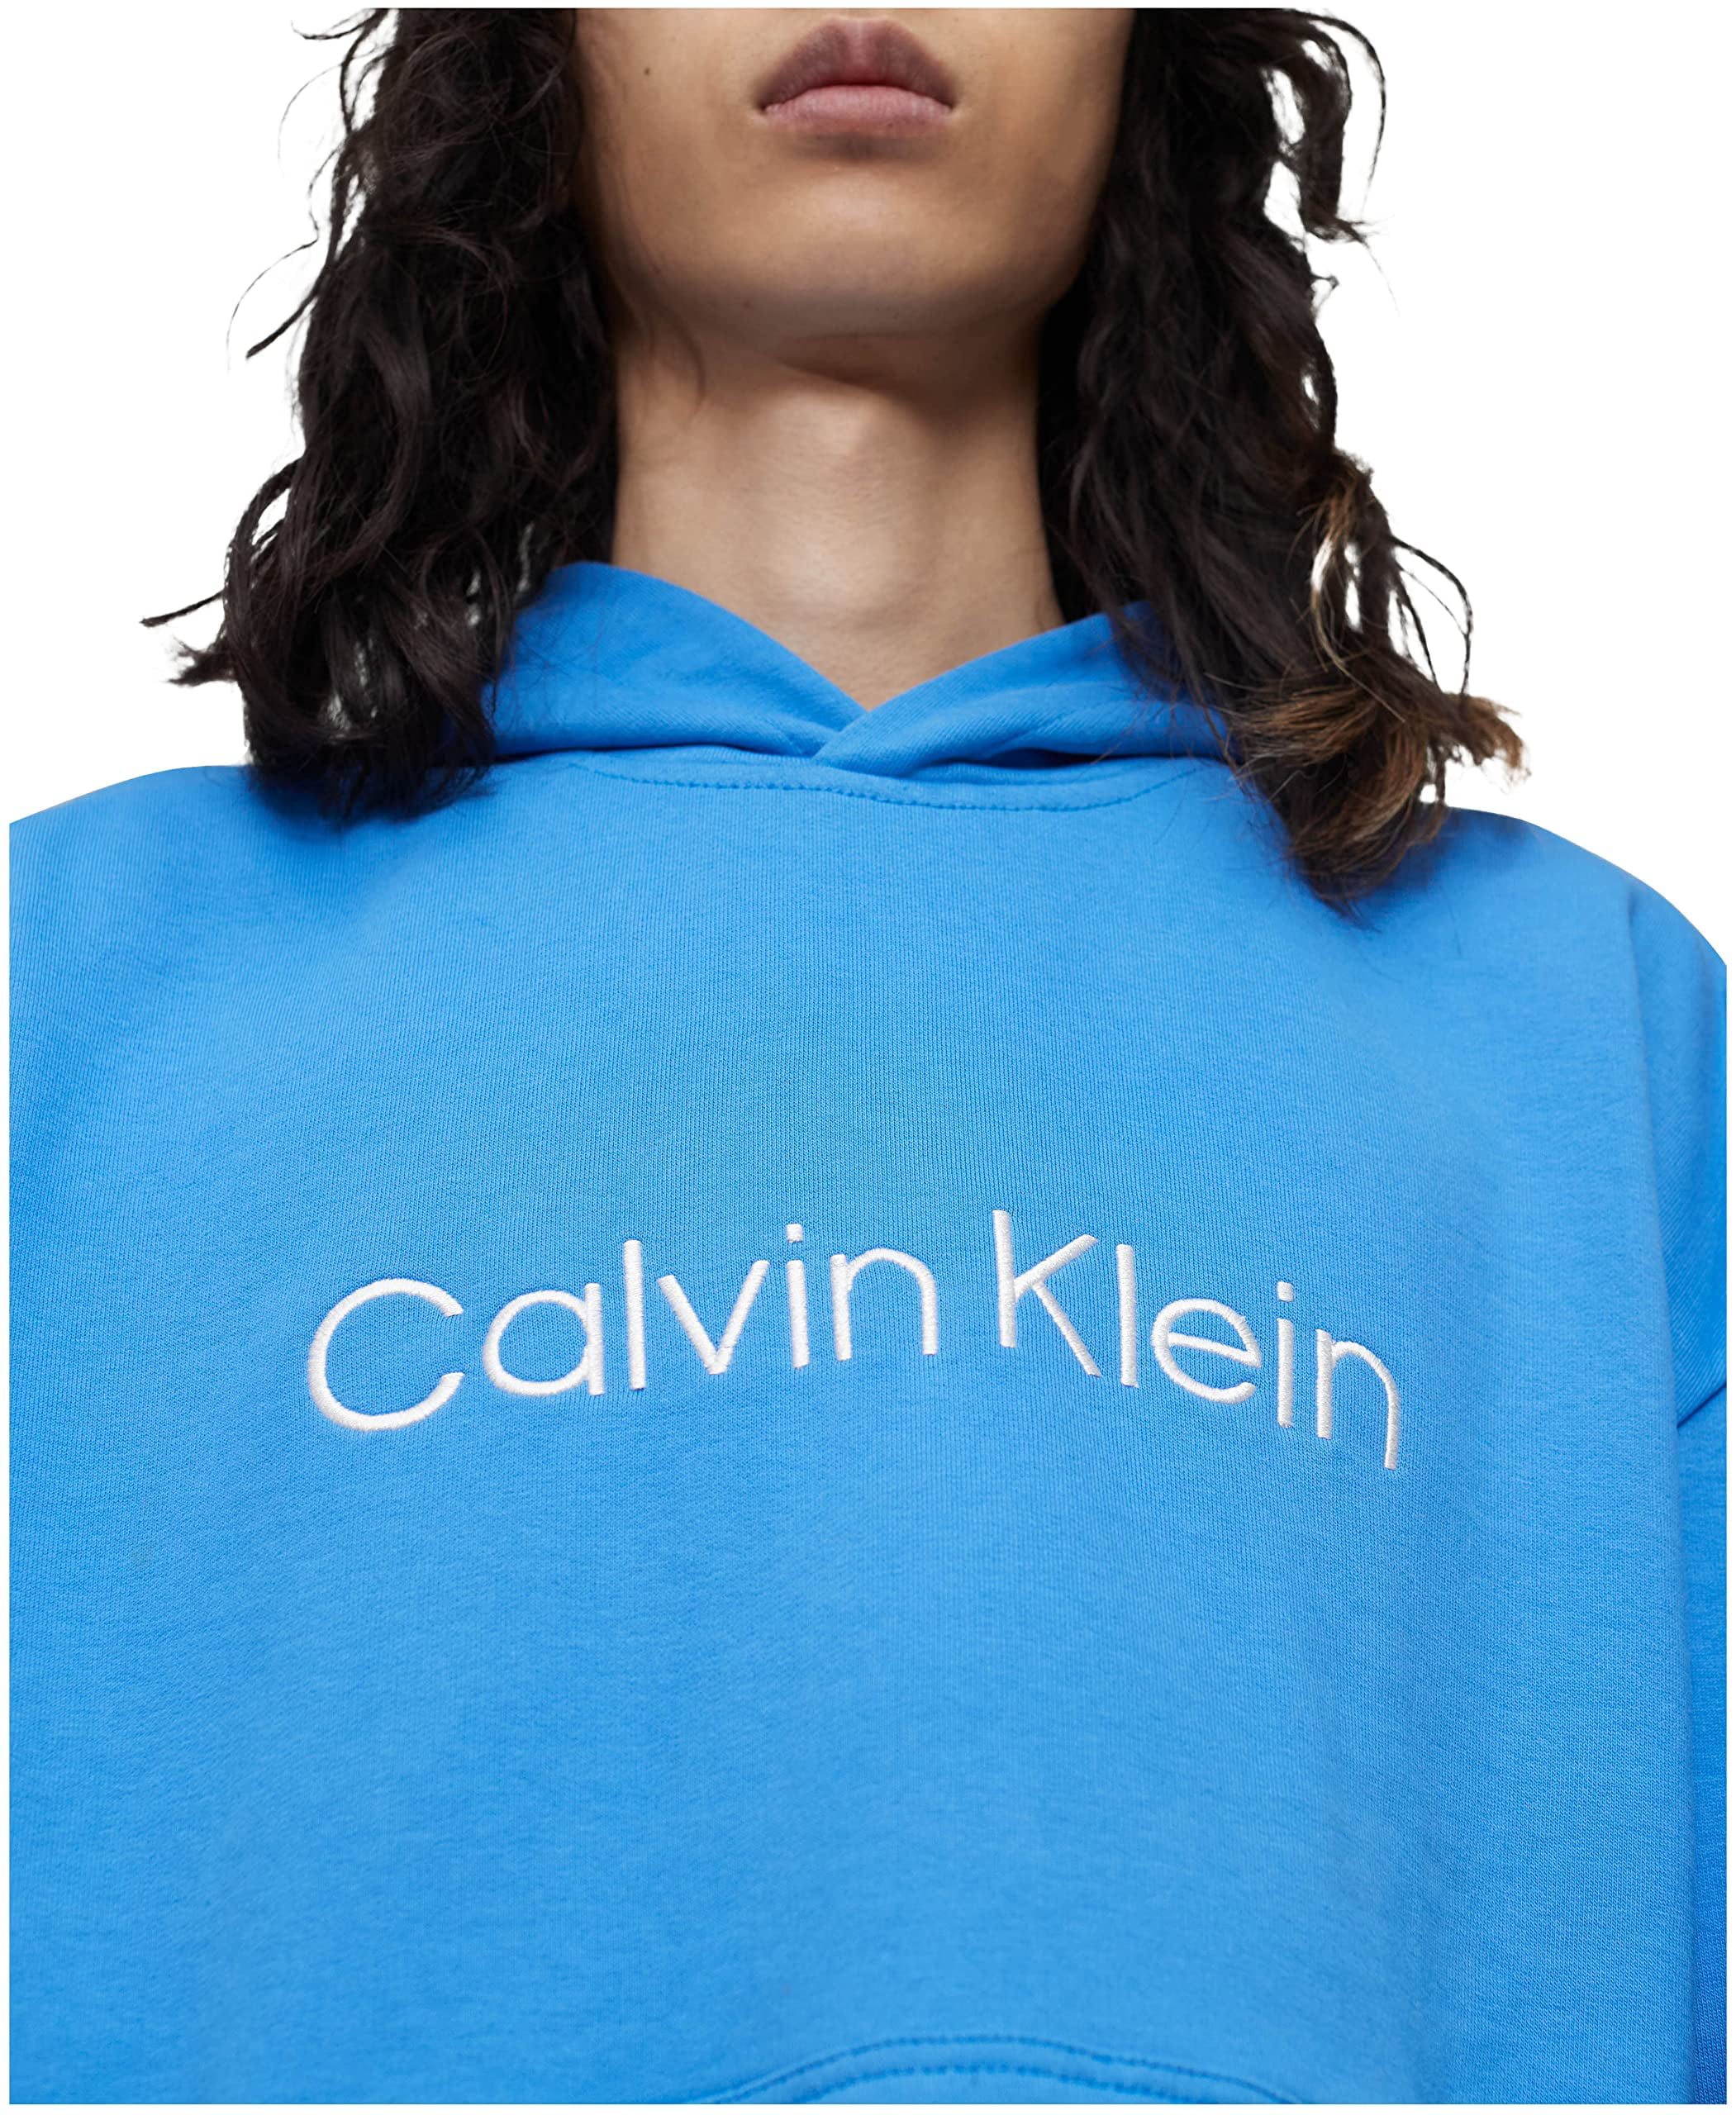 Sweatshirt Calvin Hooded Pullover Klein Cotton Mens